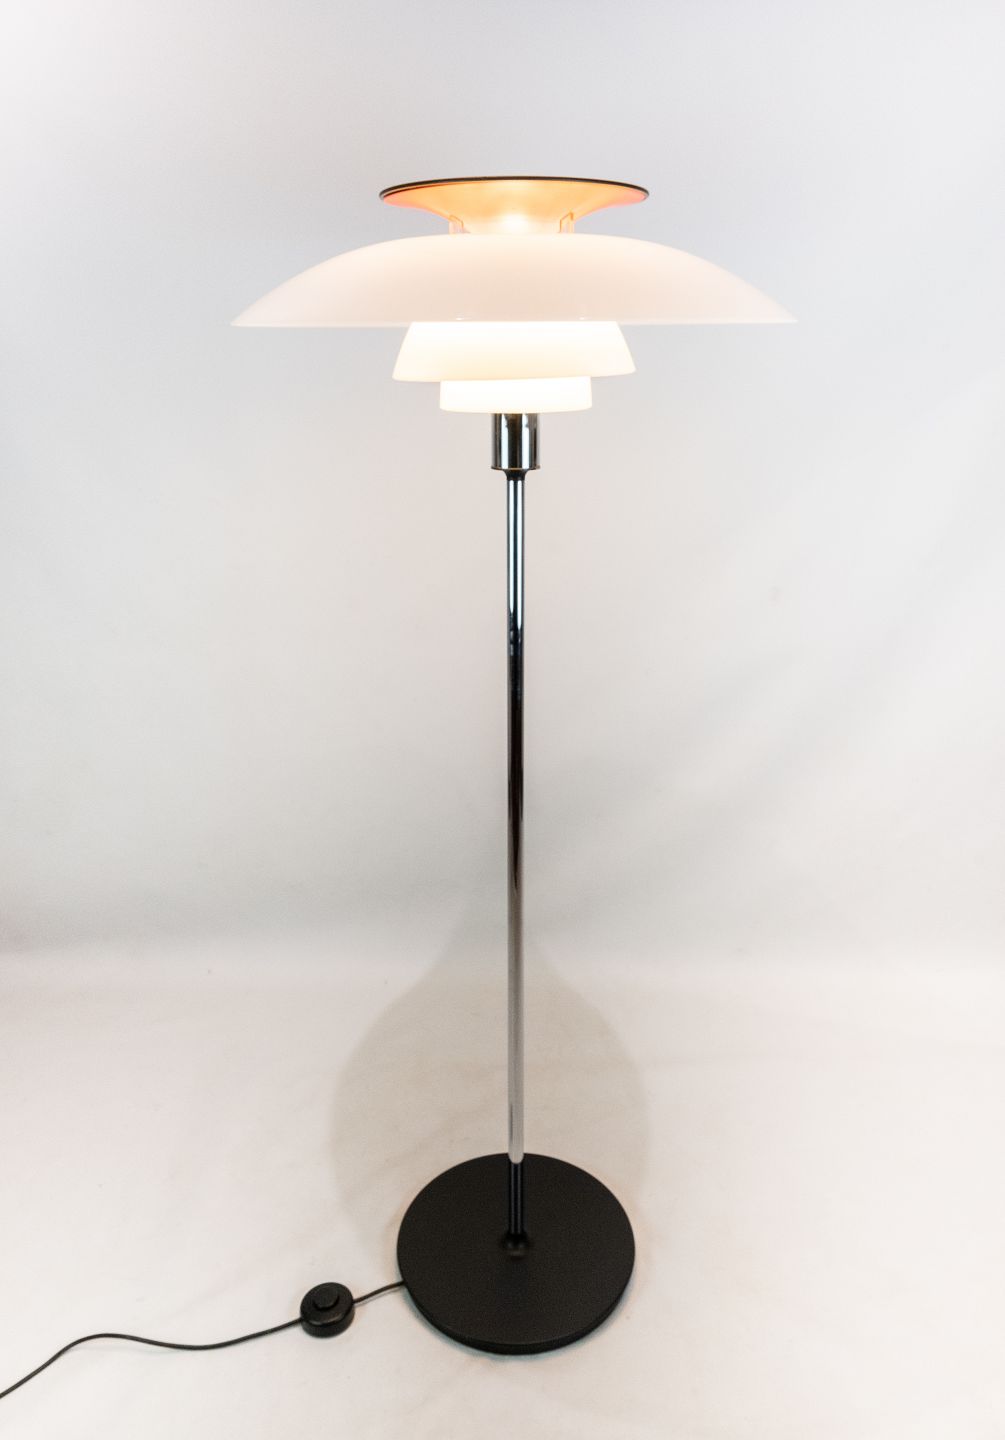 PH80 gulvlampe designet af Poul Henningsen og fremstillet af Louis